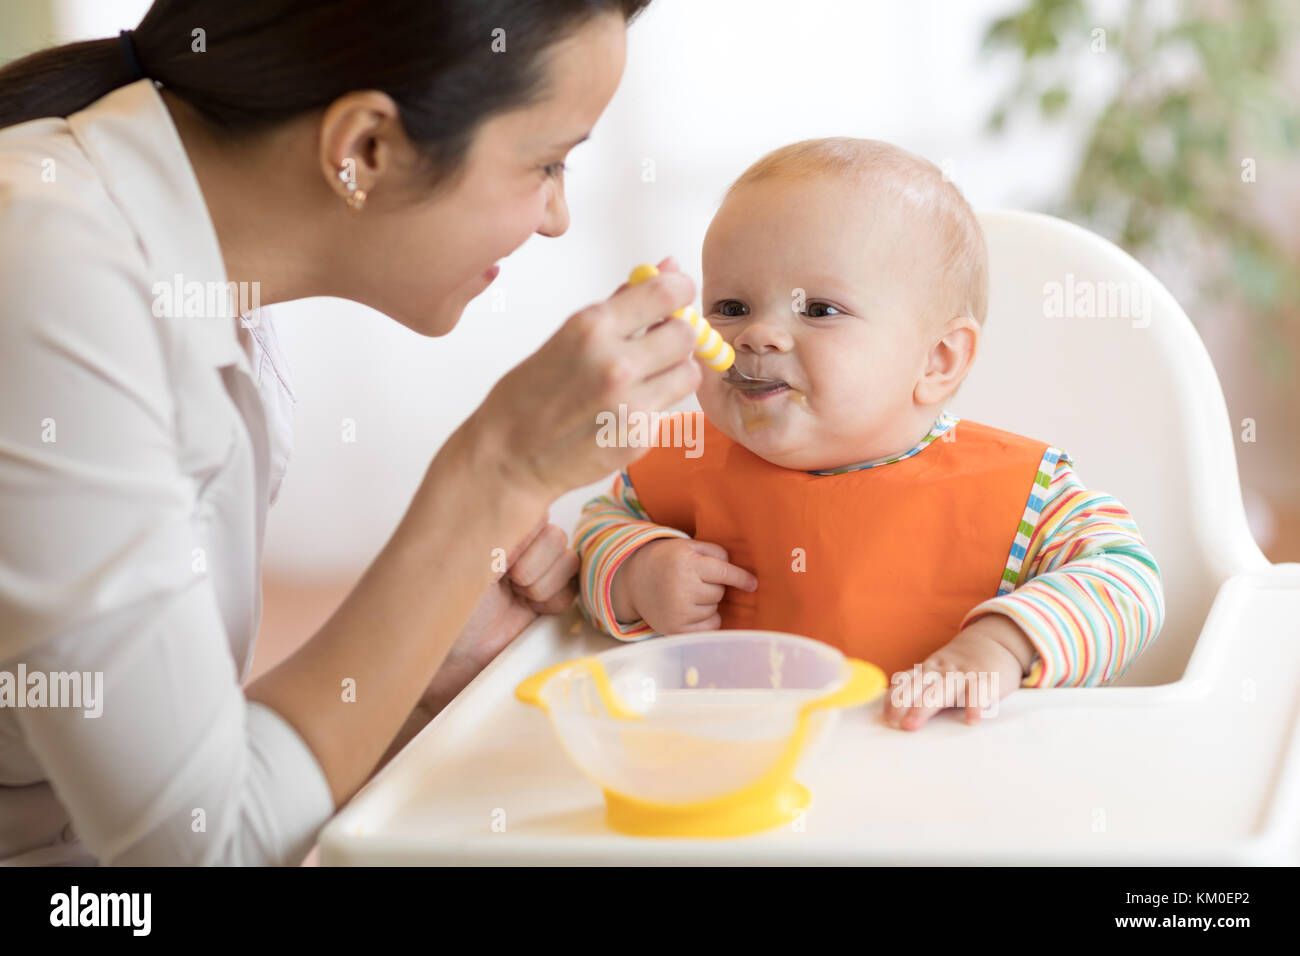 L'alimentation, de l'enfant et la parentalité concept - maman avec une cuillère de purée et nourrir bébé à la maison Banque D'Images